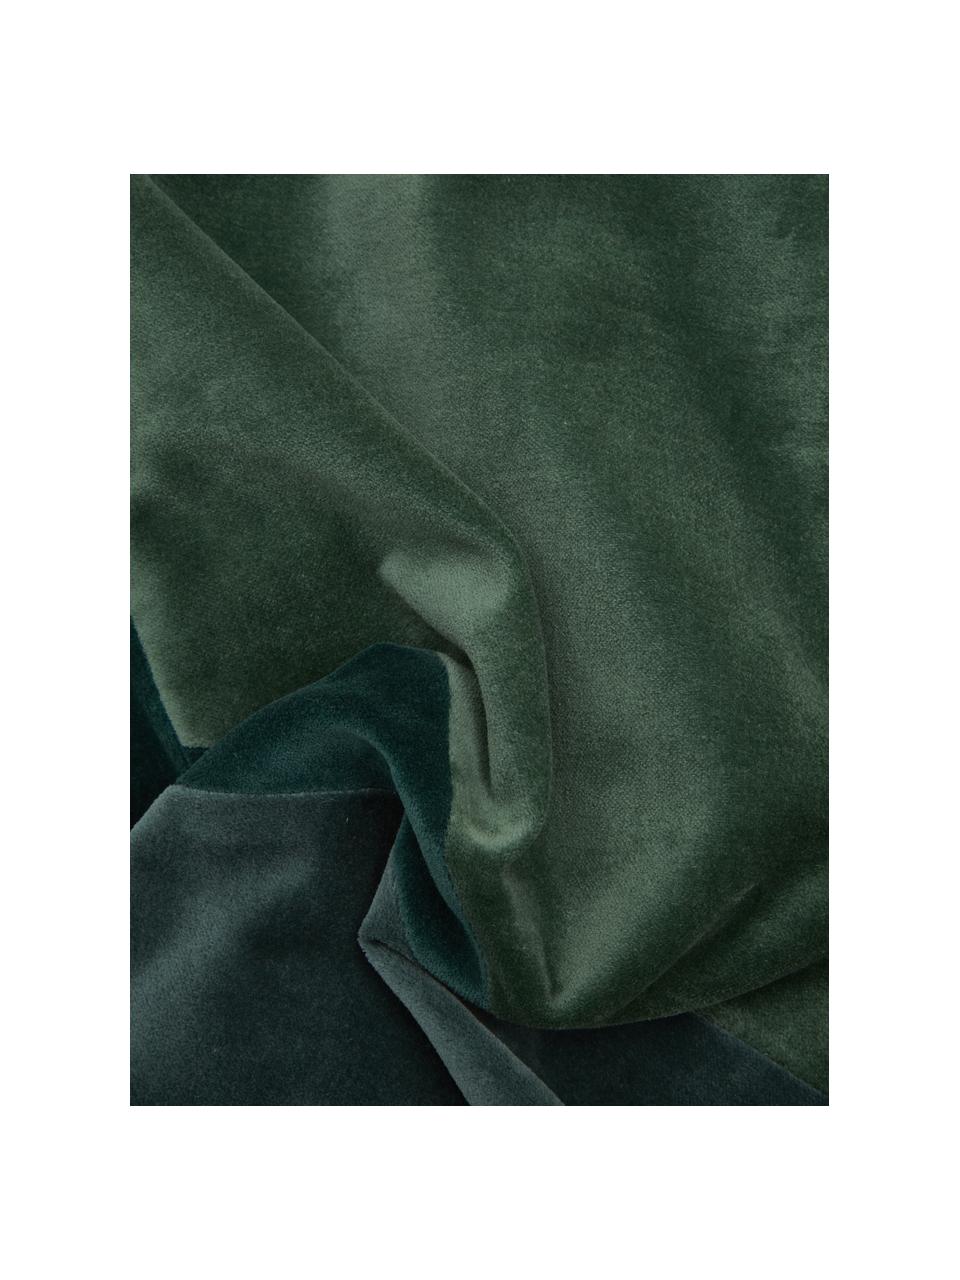 Cojín de terciopelo Patchwork, con relleno, Funda: 100% terciopelo de algodó, Verde, An 30 x L 50 cm